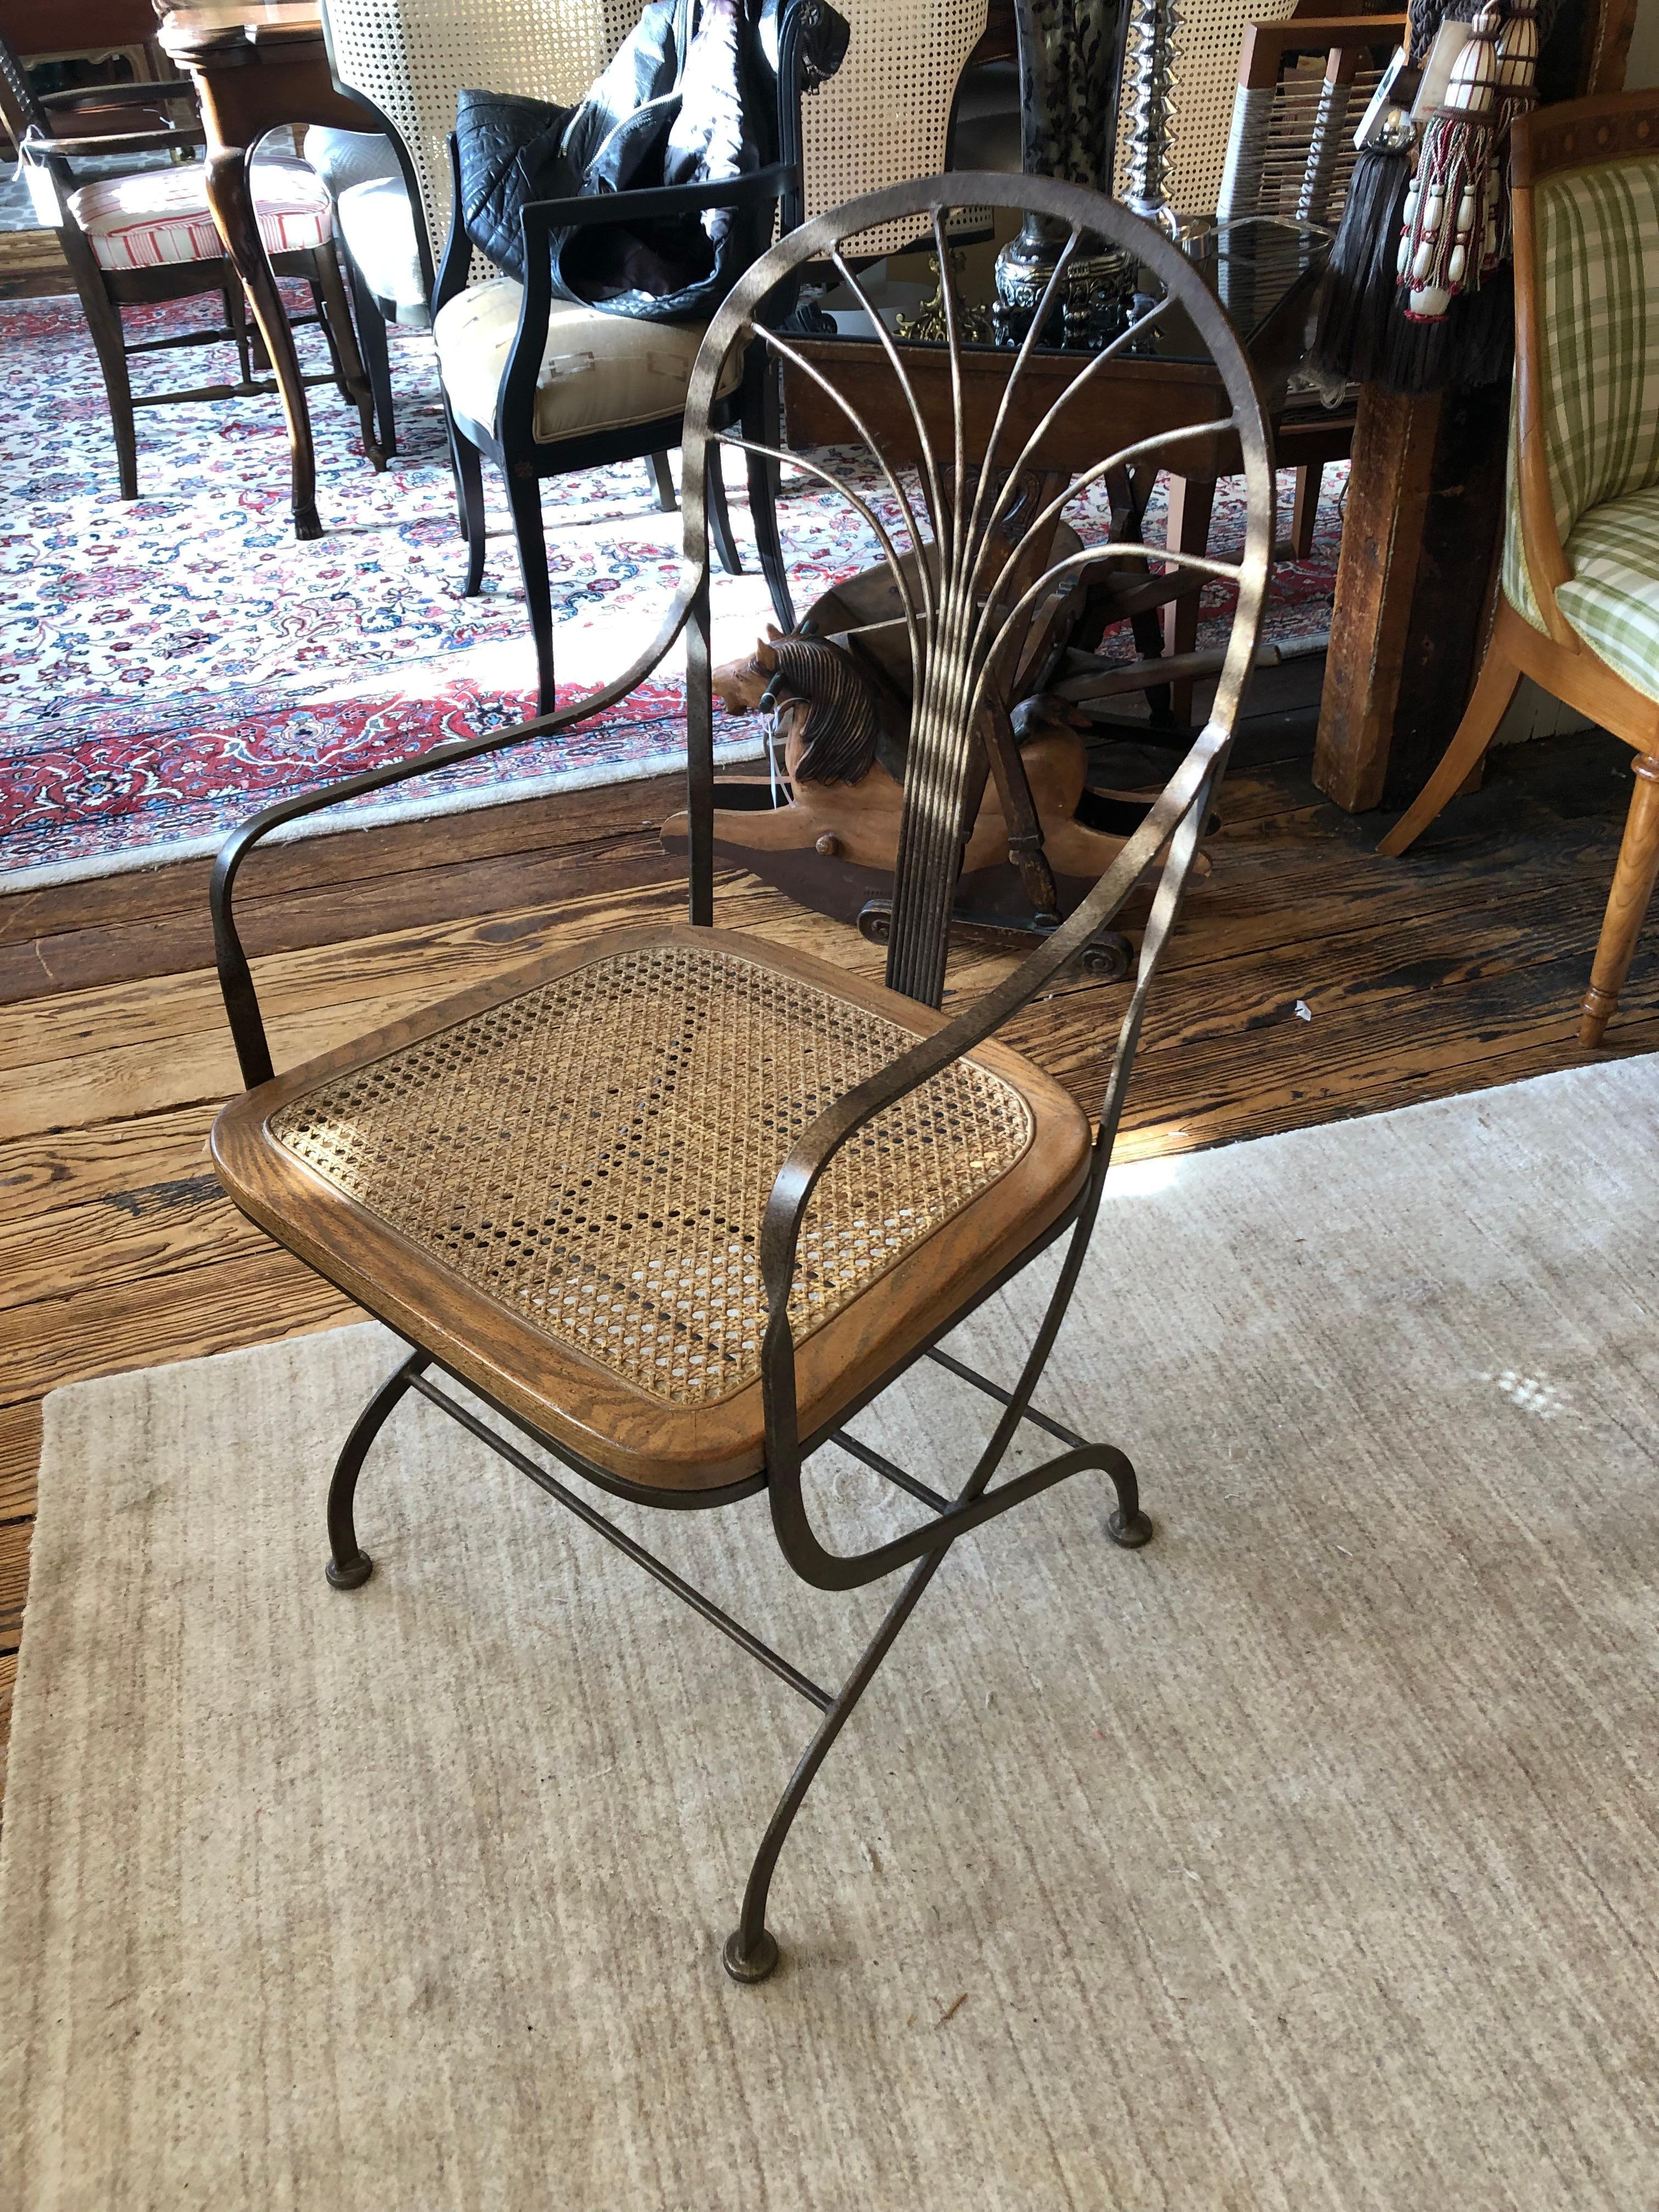 Ein großartig aussehender Sessel oder Schreibtischstuhl mit einer ungewöhnlichen, erdigen Mischung aus warmem, bronzefarbenem Metall und holzumrandetem Schilfrohrsitz. Der Stuhl ist solide und bequem und hat ein luftiges Aussehen. Das Metall der